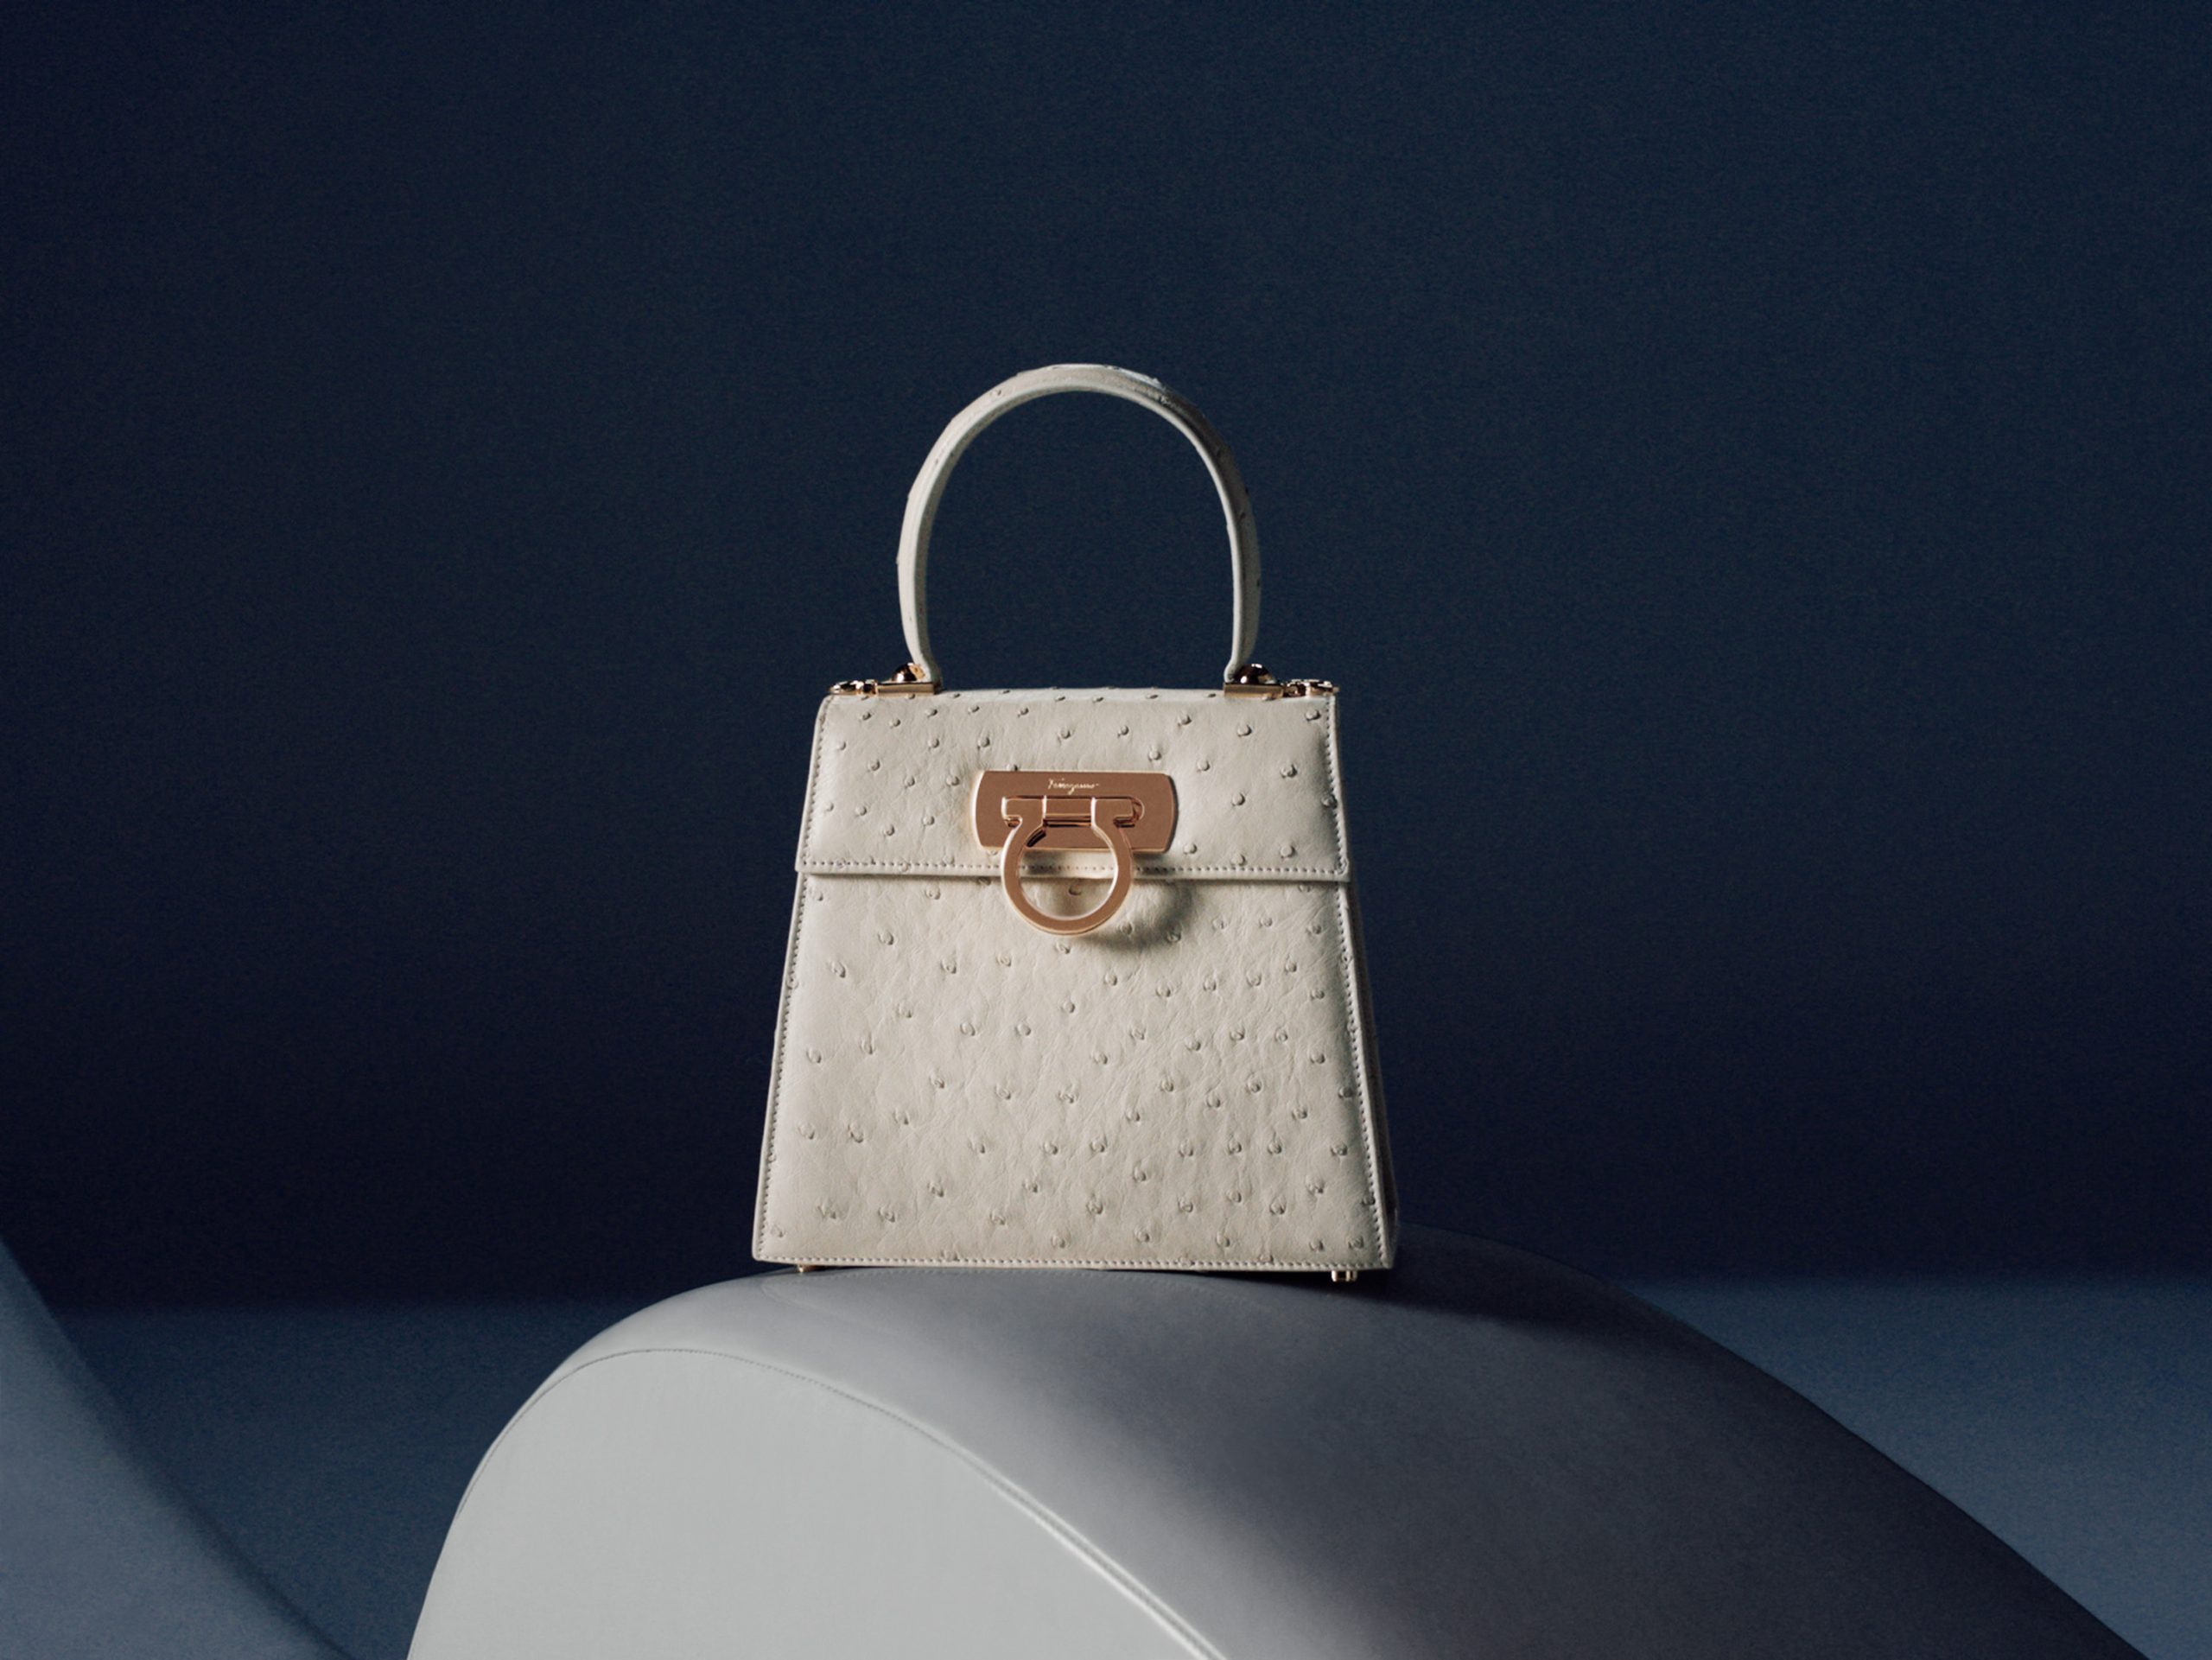 Salvatore Ferragamo 'Top Handle Bag' Ad Campaign | The Impression